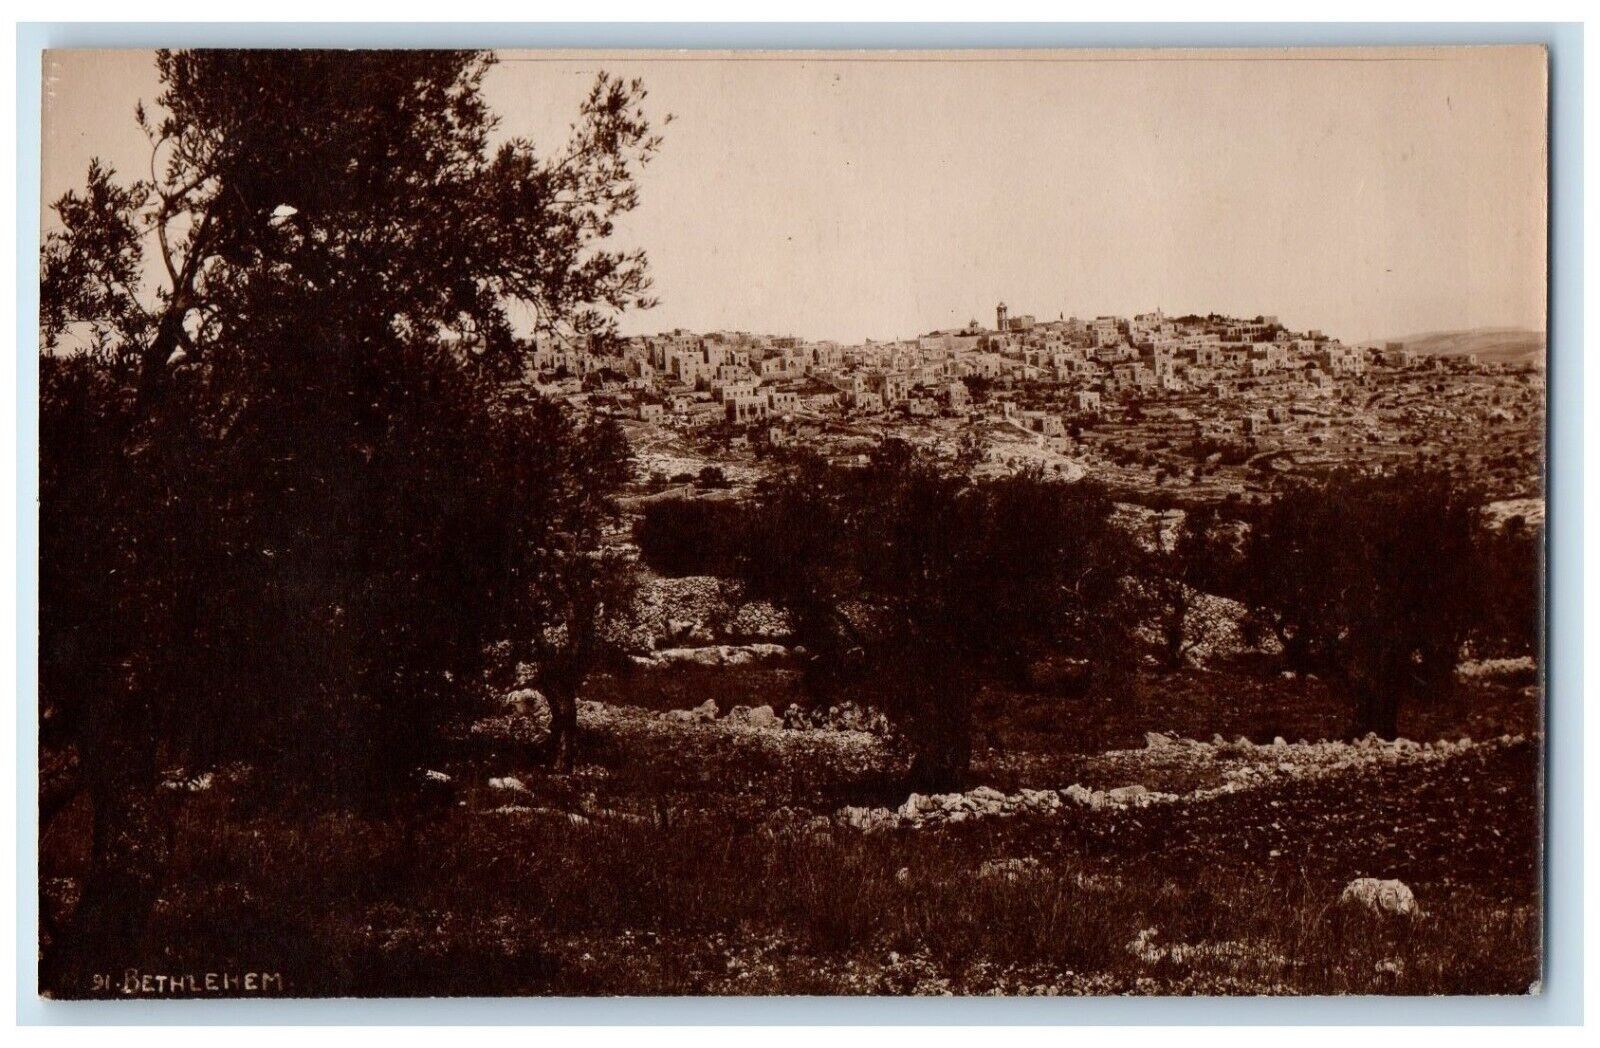 c1910's Bethlehem Israel Palestine City Scape View Antique RPPC Photo Postcard